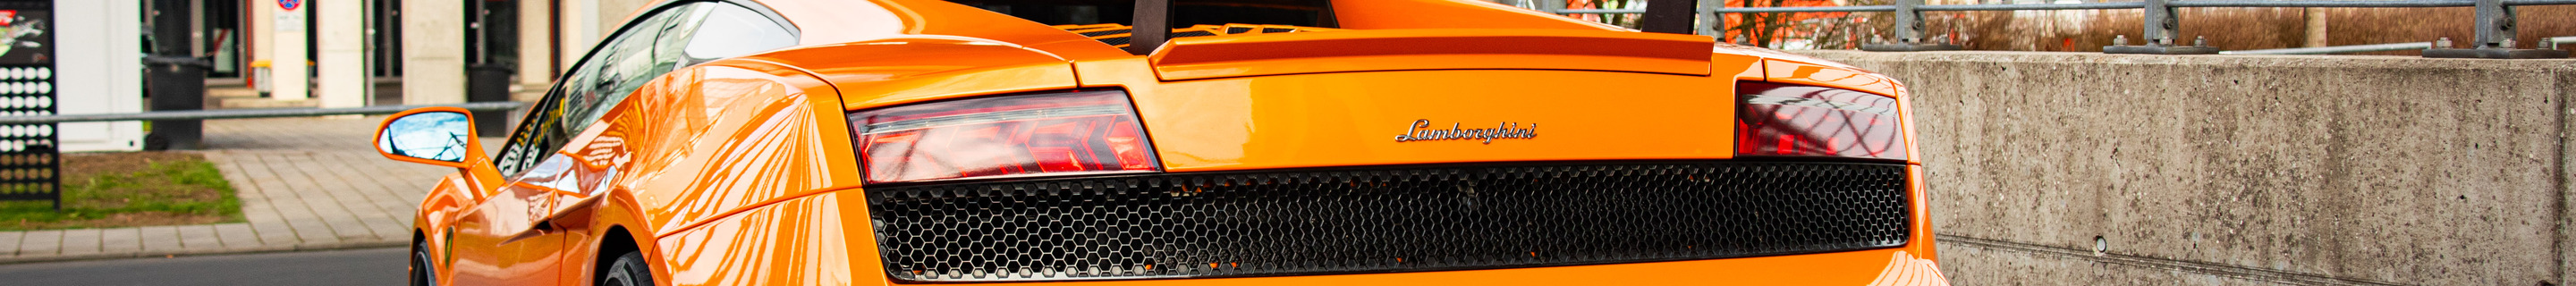 Lamborghini Gallardo LP560-4 Super Trofeo Strada Reiter Engineering